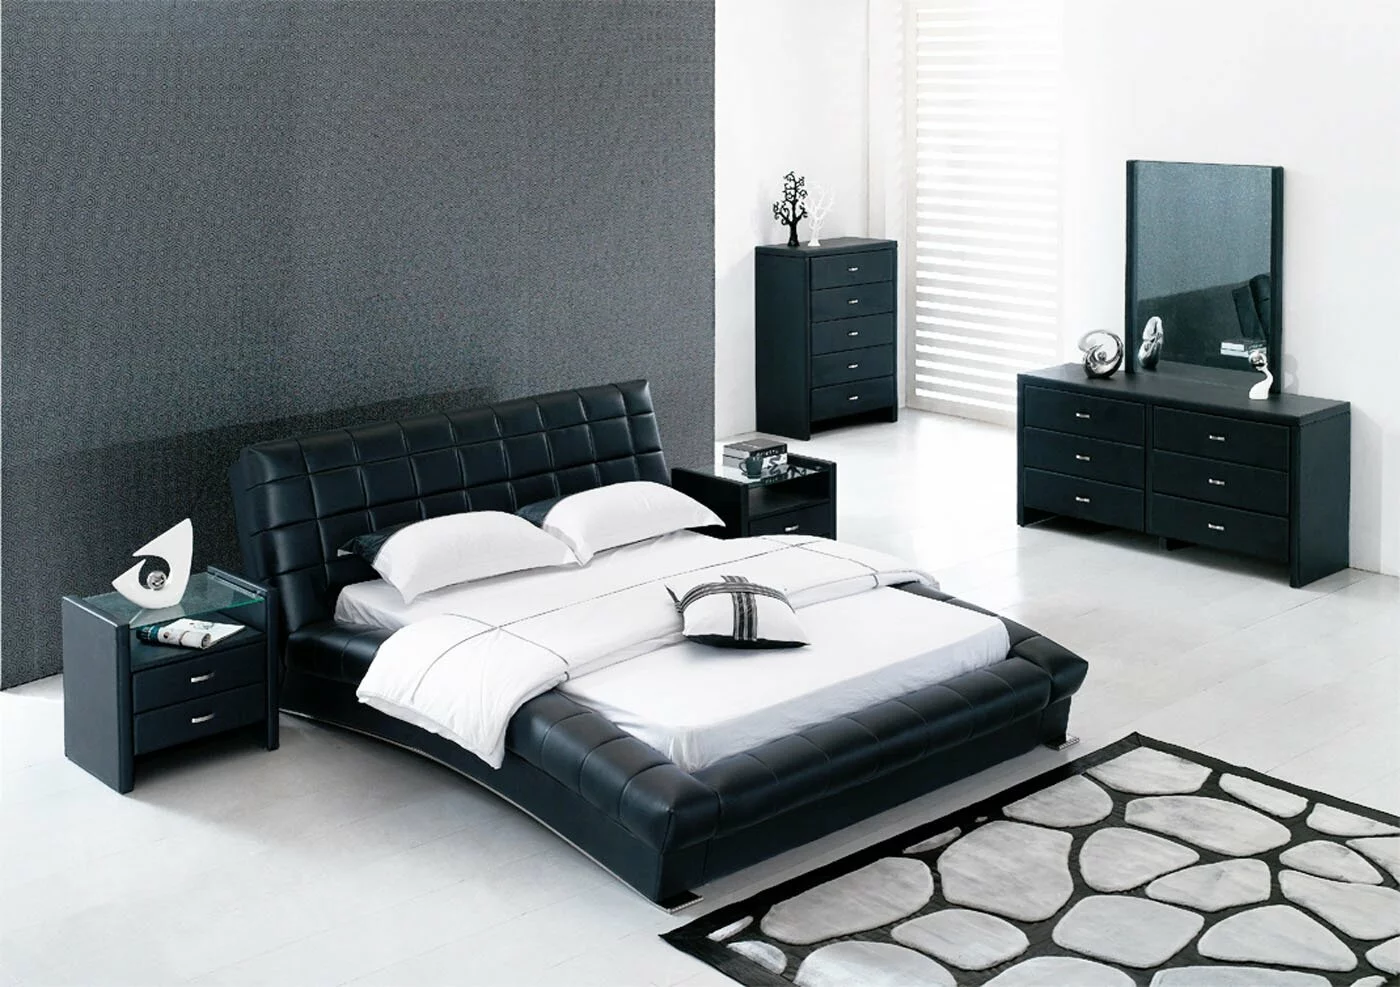 black-bedroom-set-stylish-listed-in-black-bedroom-walls-bedroom-within-ikea-bedroom-set